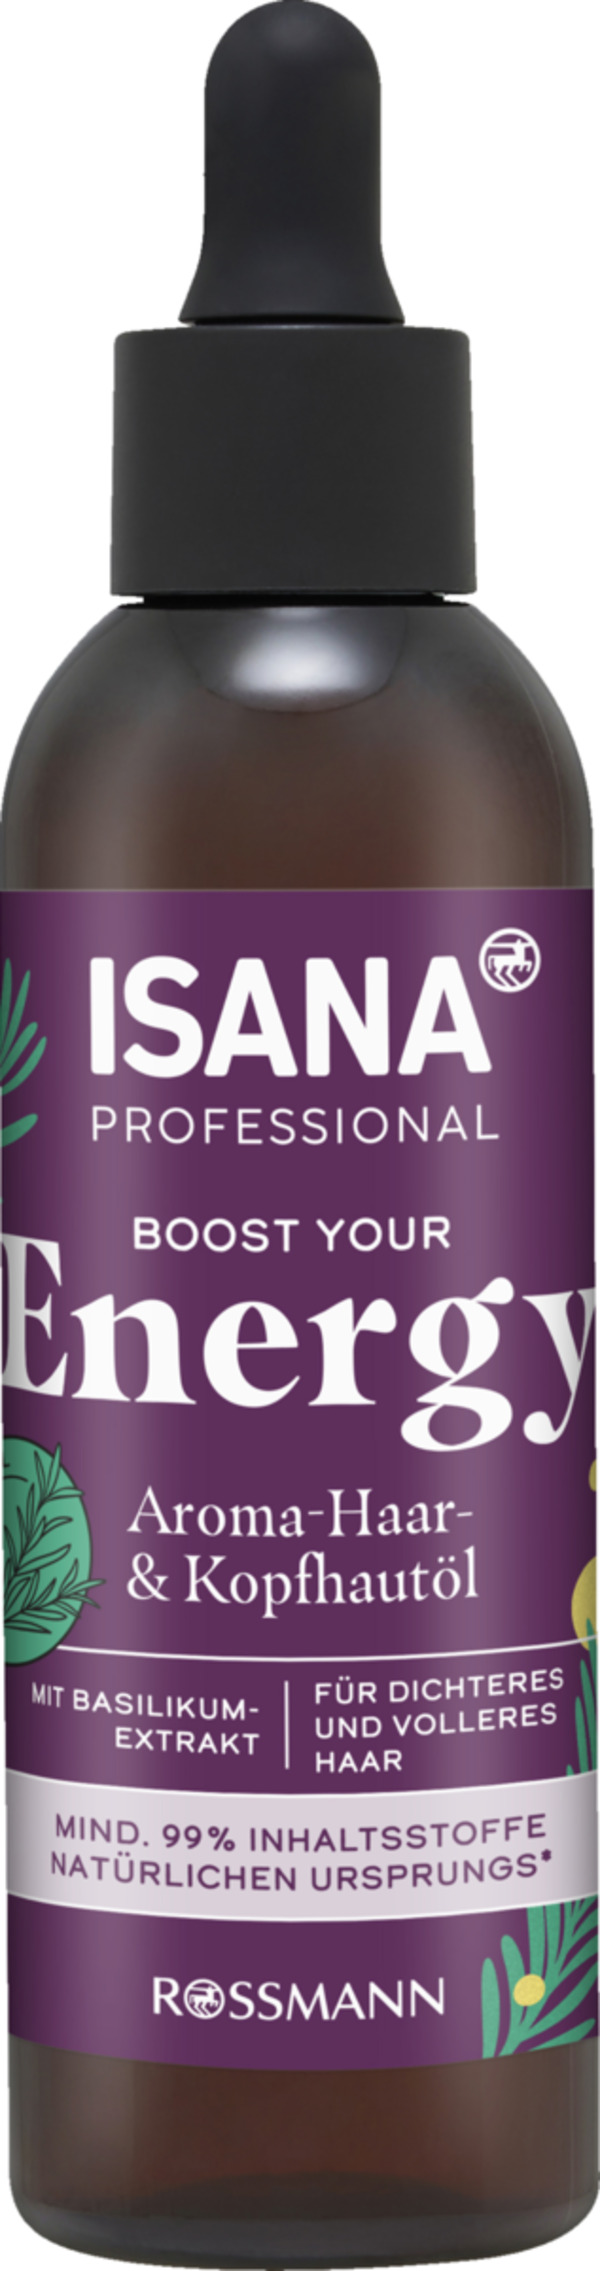 Bild 1 von ISANA PROFESSIONAL Boost your Energy Aroma Haar-& Kopfhautöl